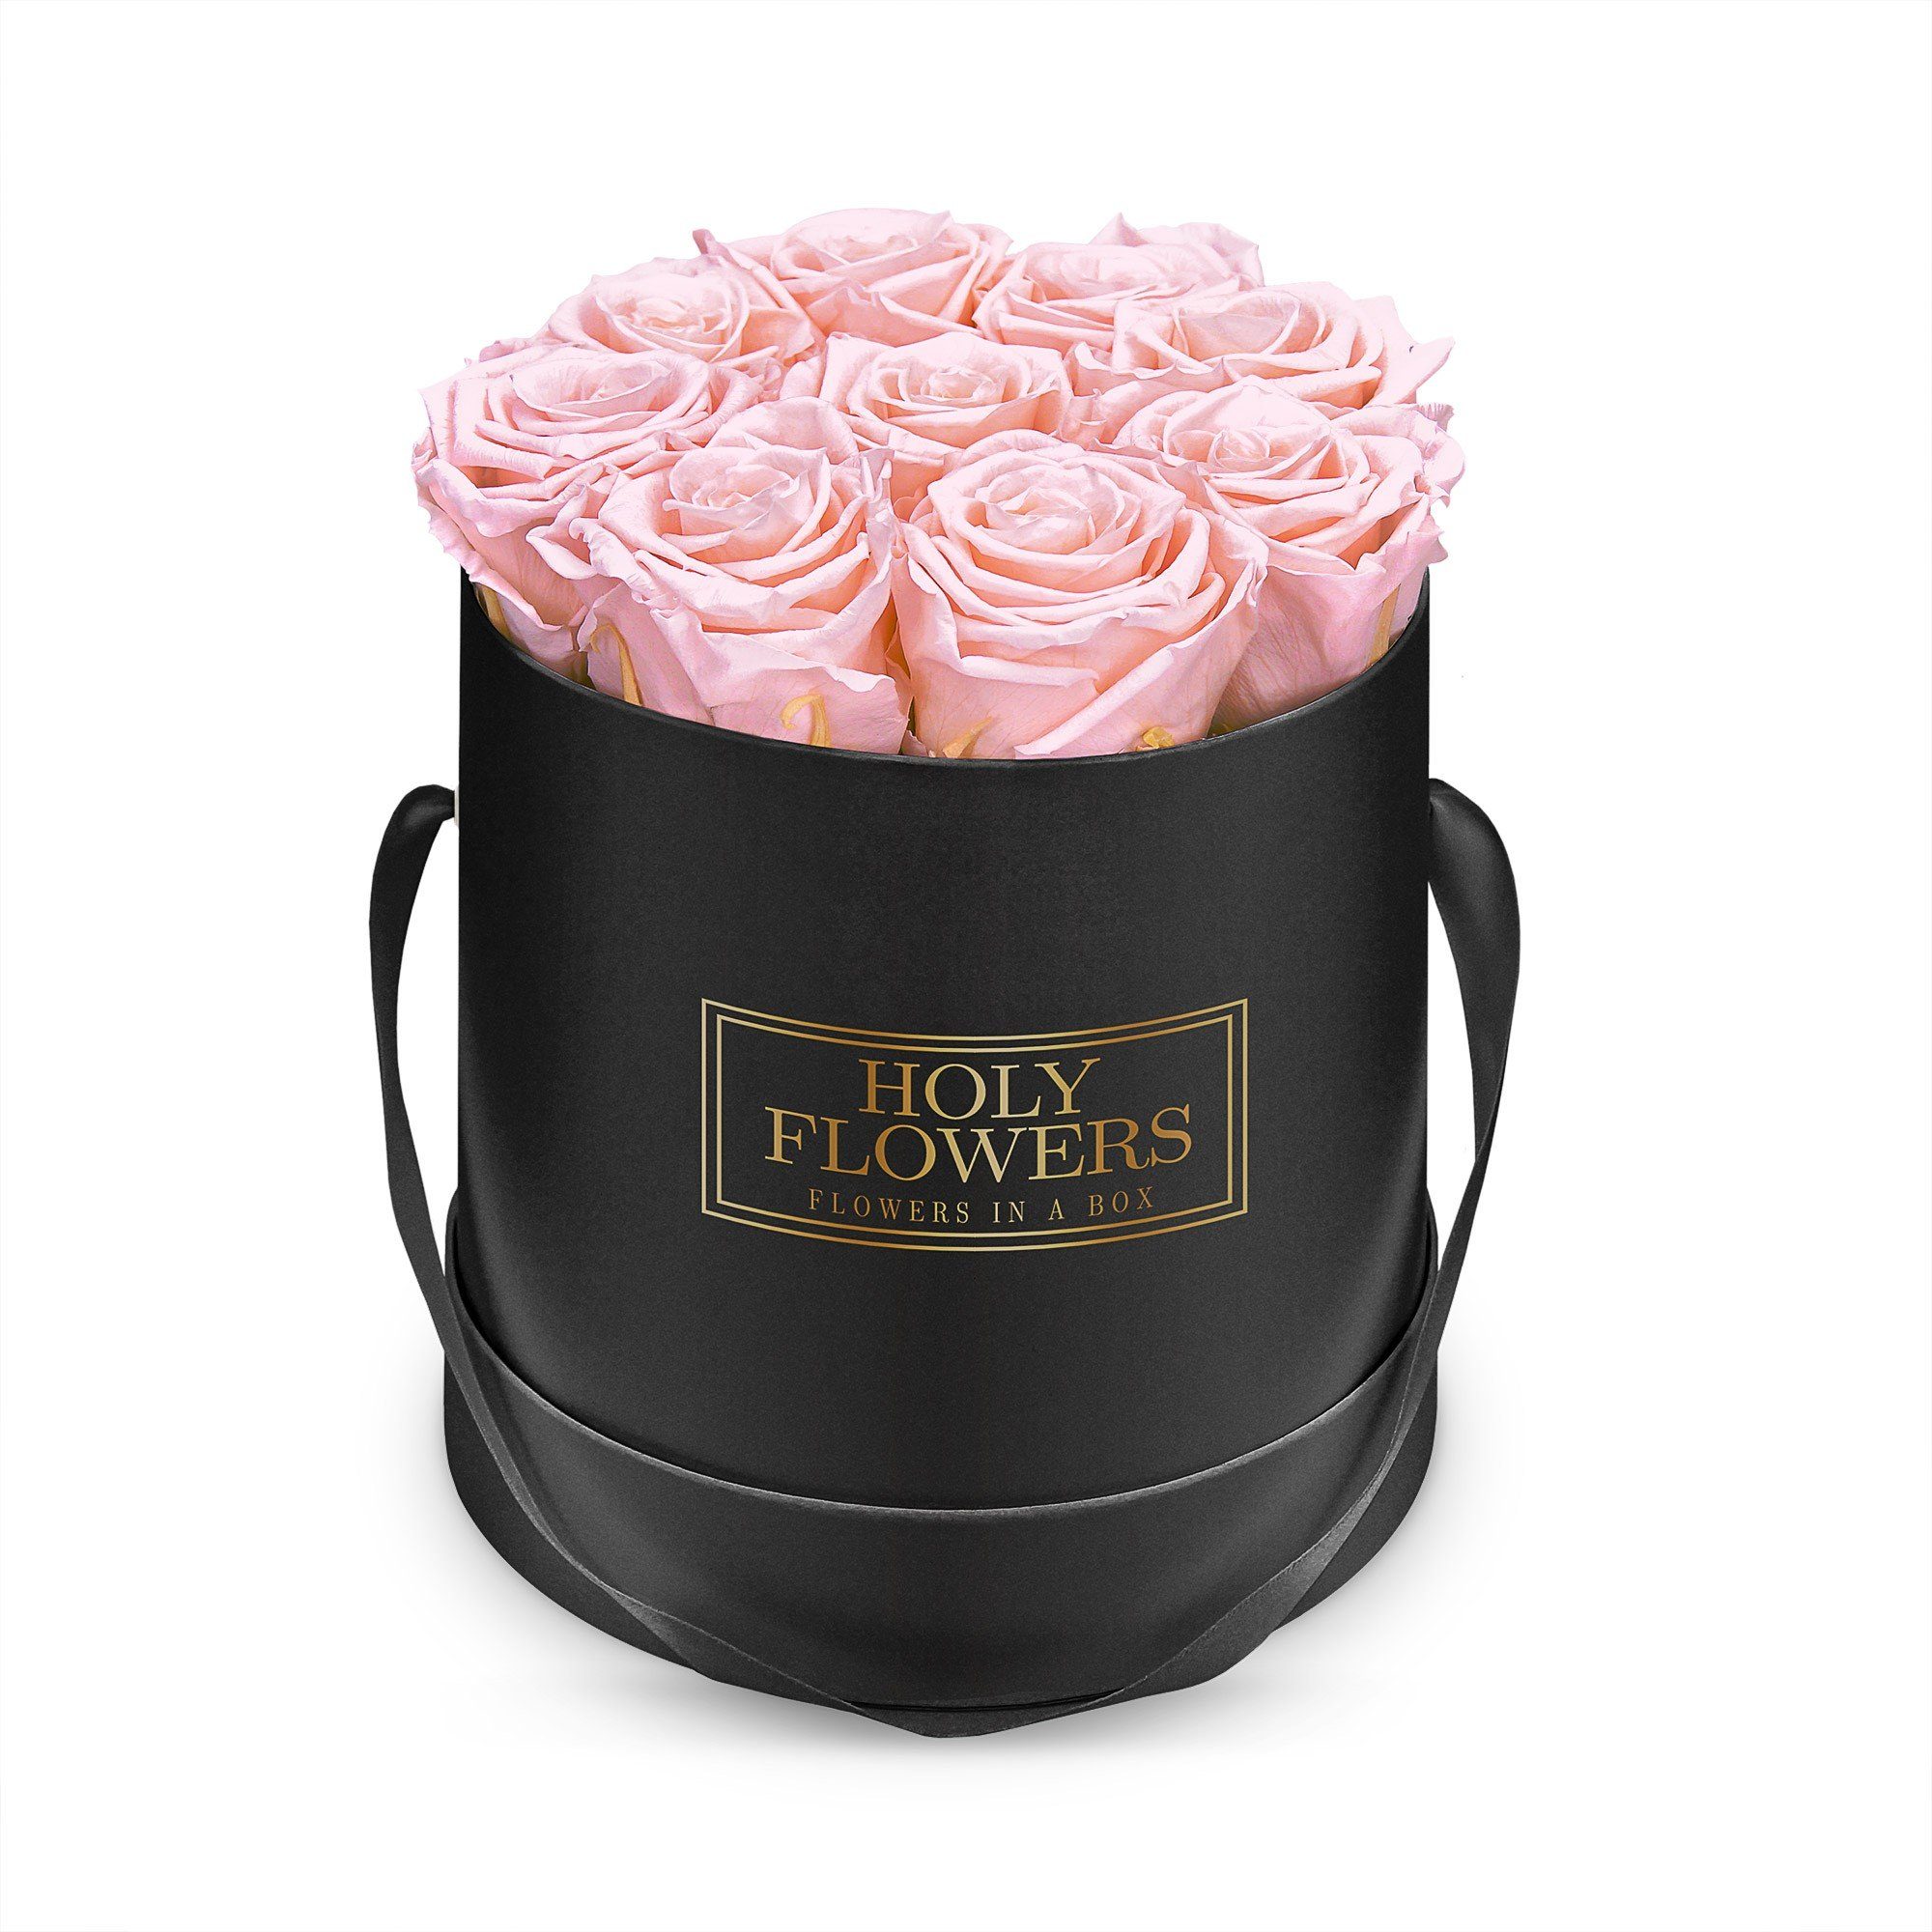 Kunstblume Runde Rosenbox in schwarz mit 8- 12 Infinity Rosen I 3 Jahre haltbar I Echte, duftende konservierte Blumen I by Raul Richter Infinity Rose, Holy Flowers, Höhe 14 cm Pink Blush